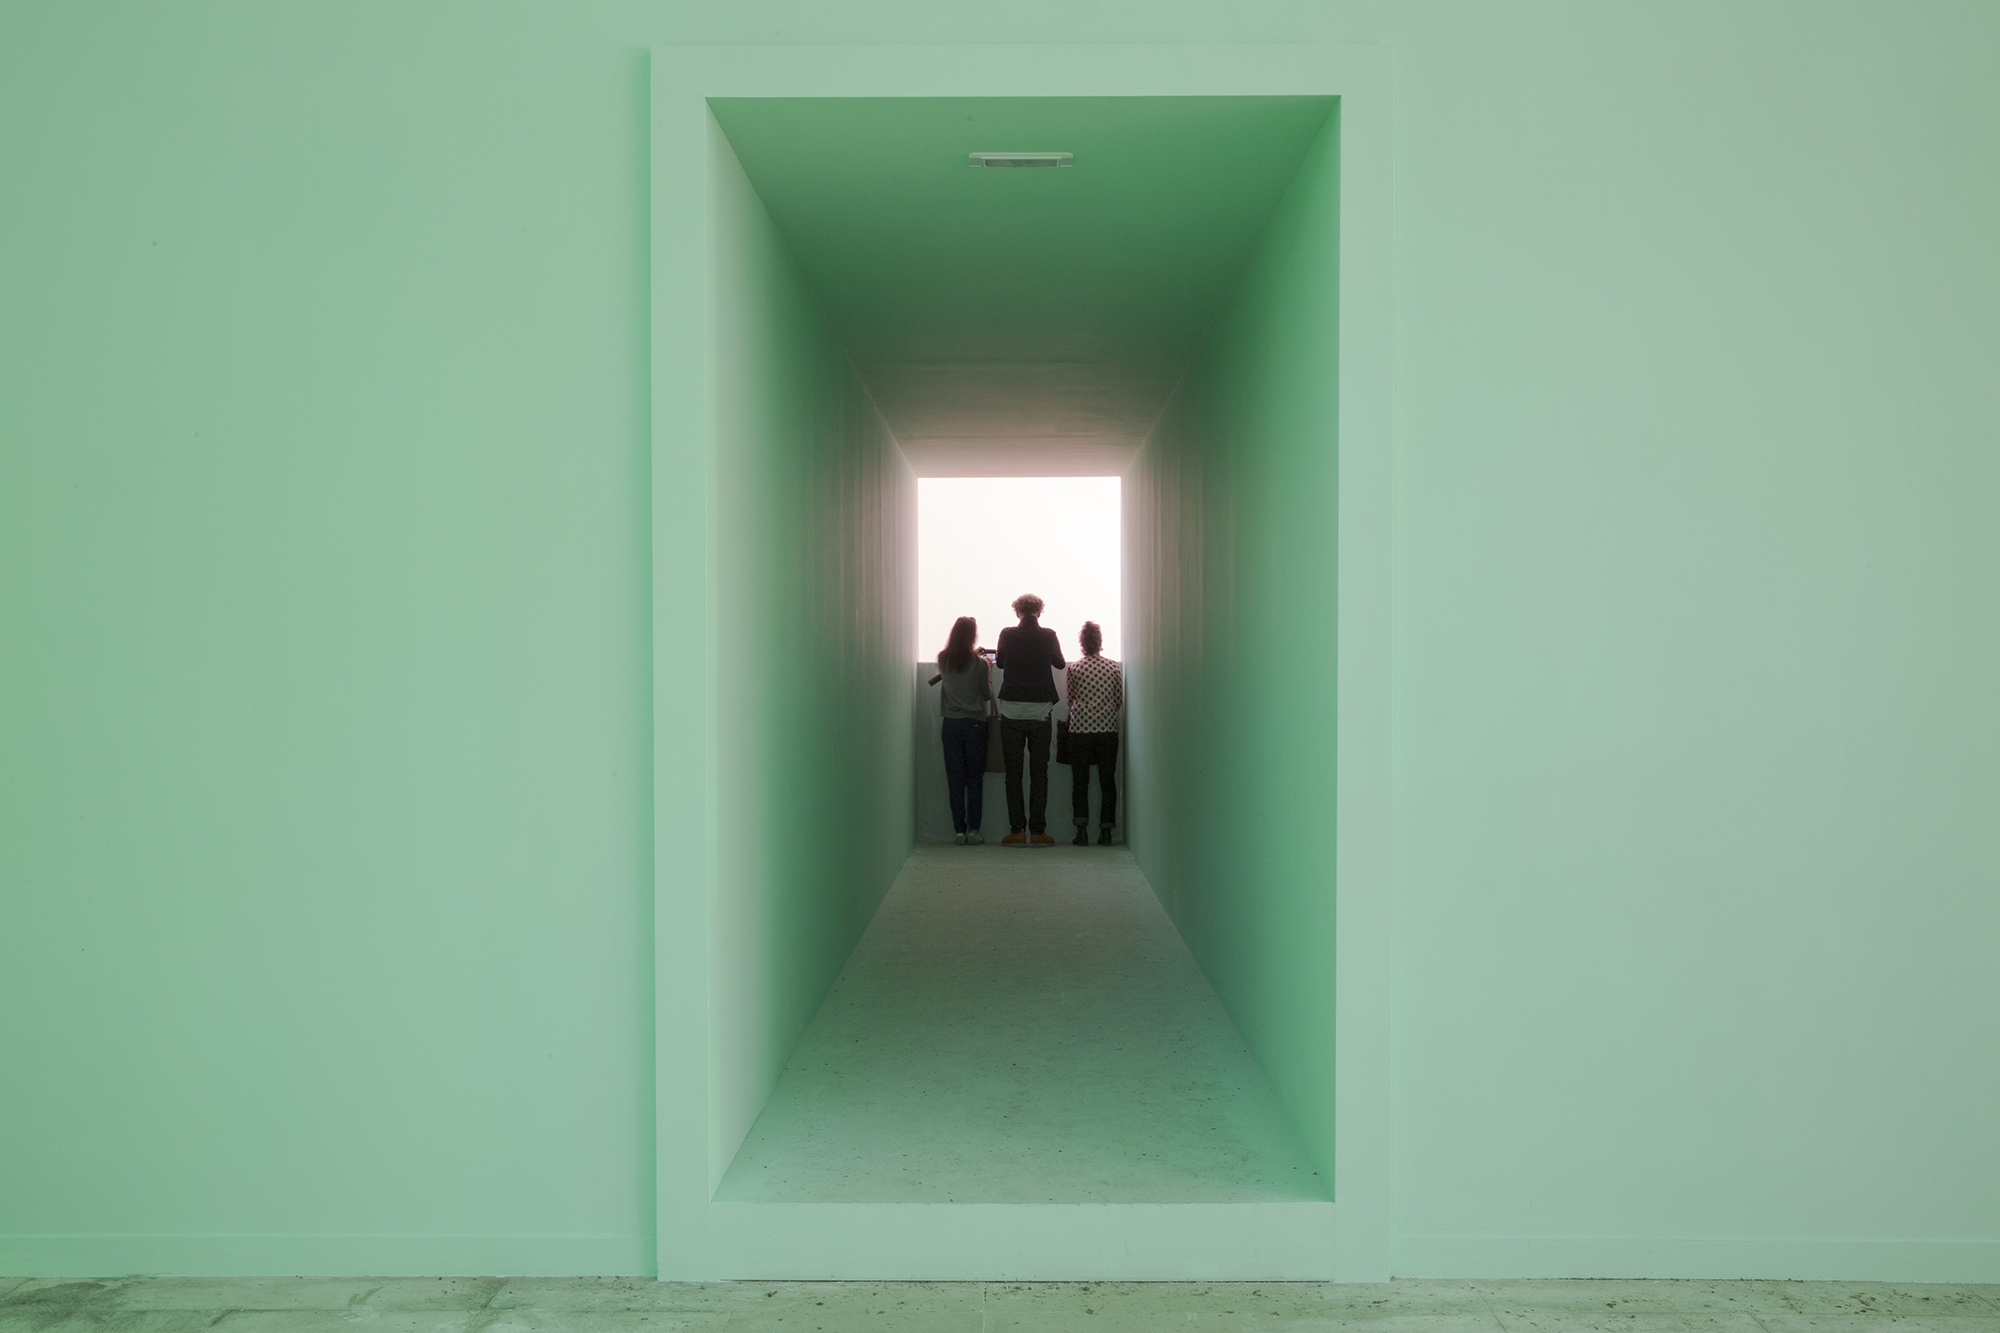 Padiglione Svizzera - Biennale di Venezia 2015